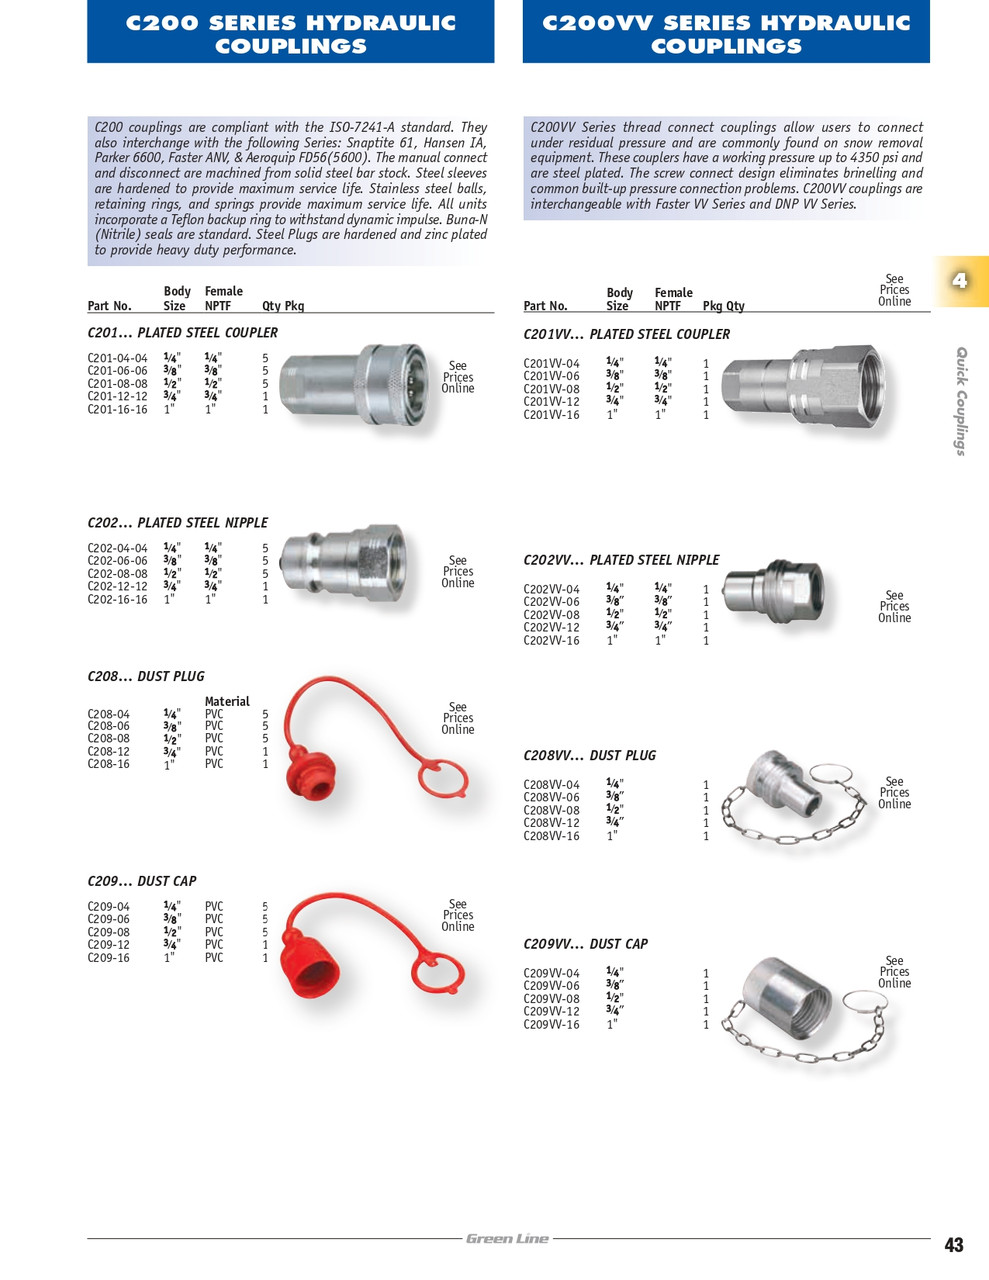 3/8" ISO "A" Hydraulic Dust Plug  C208-06